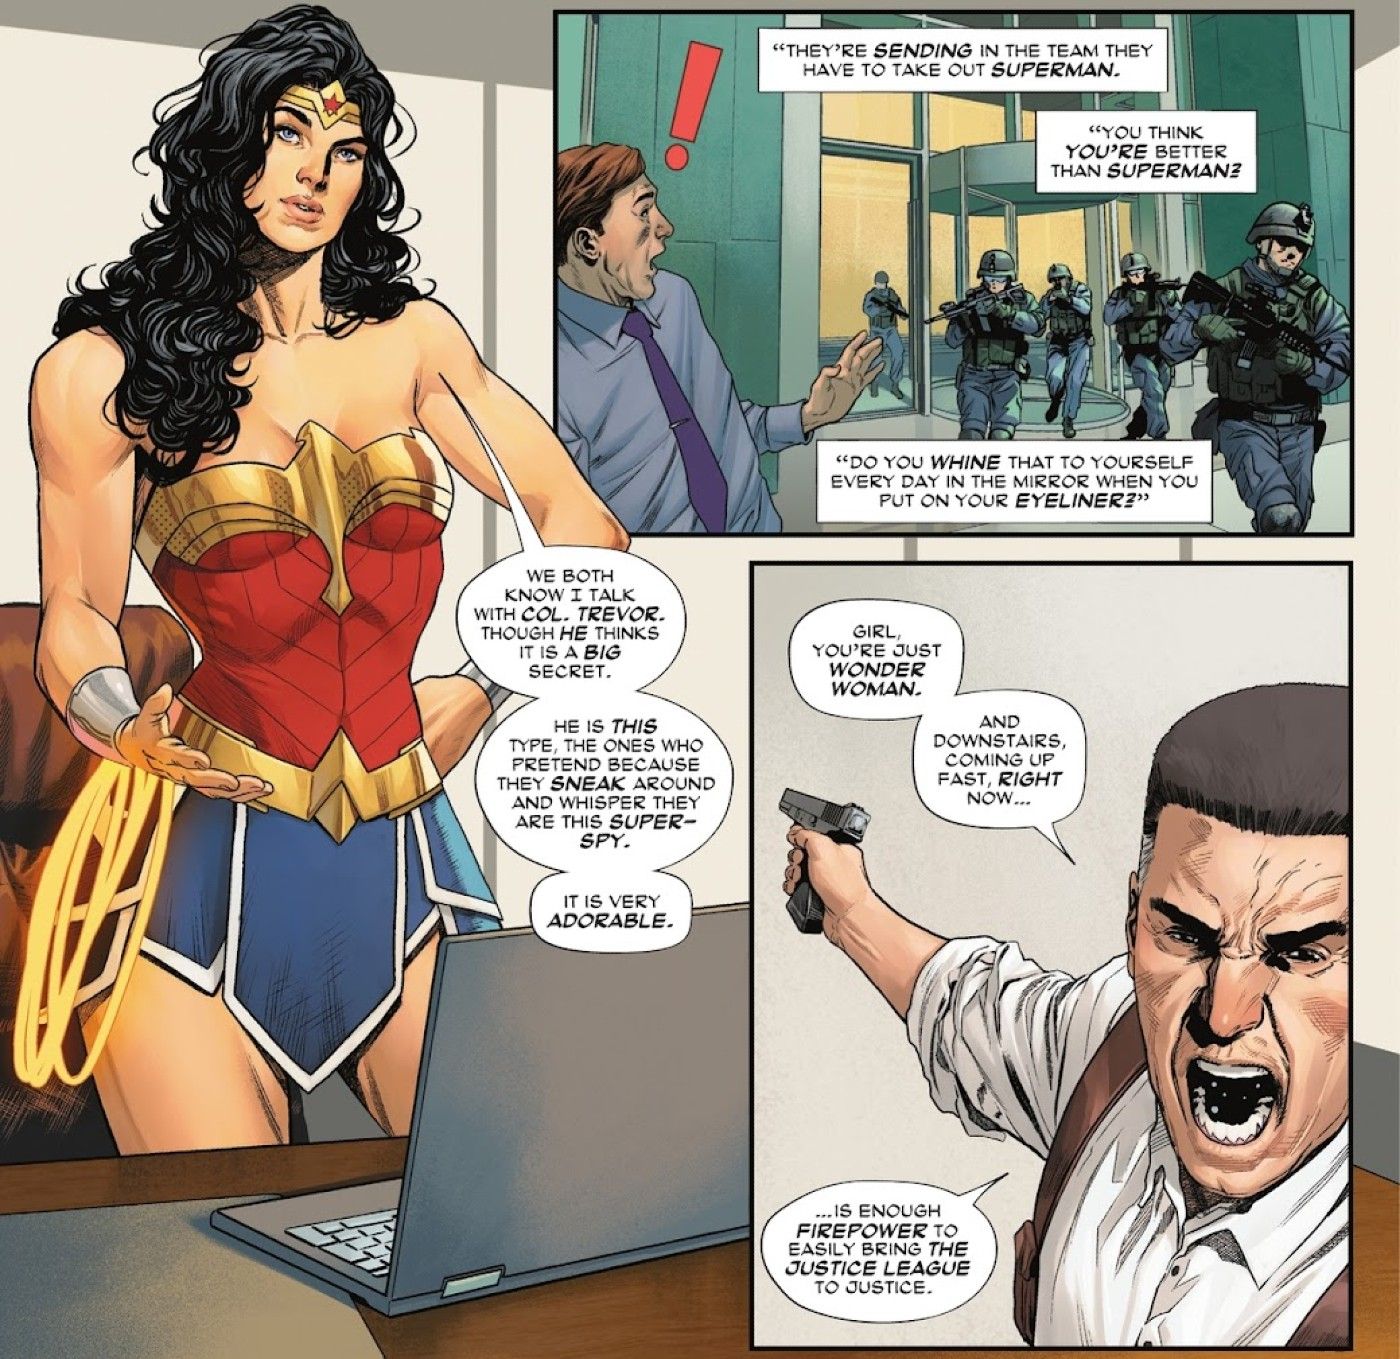 Paneles de cómics.  Wonder Woman está parada en un escritorio con una computadora mientras un hombre con una pistola habla sobre el despliegue de fuerzas militares anti-Superman.